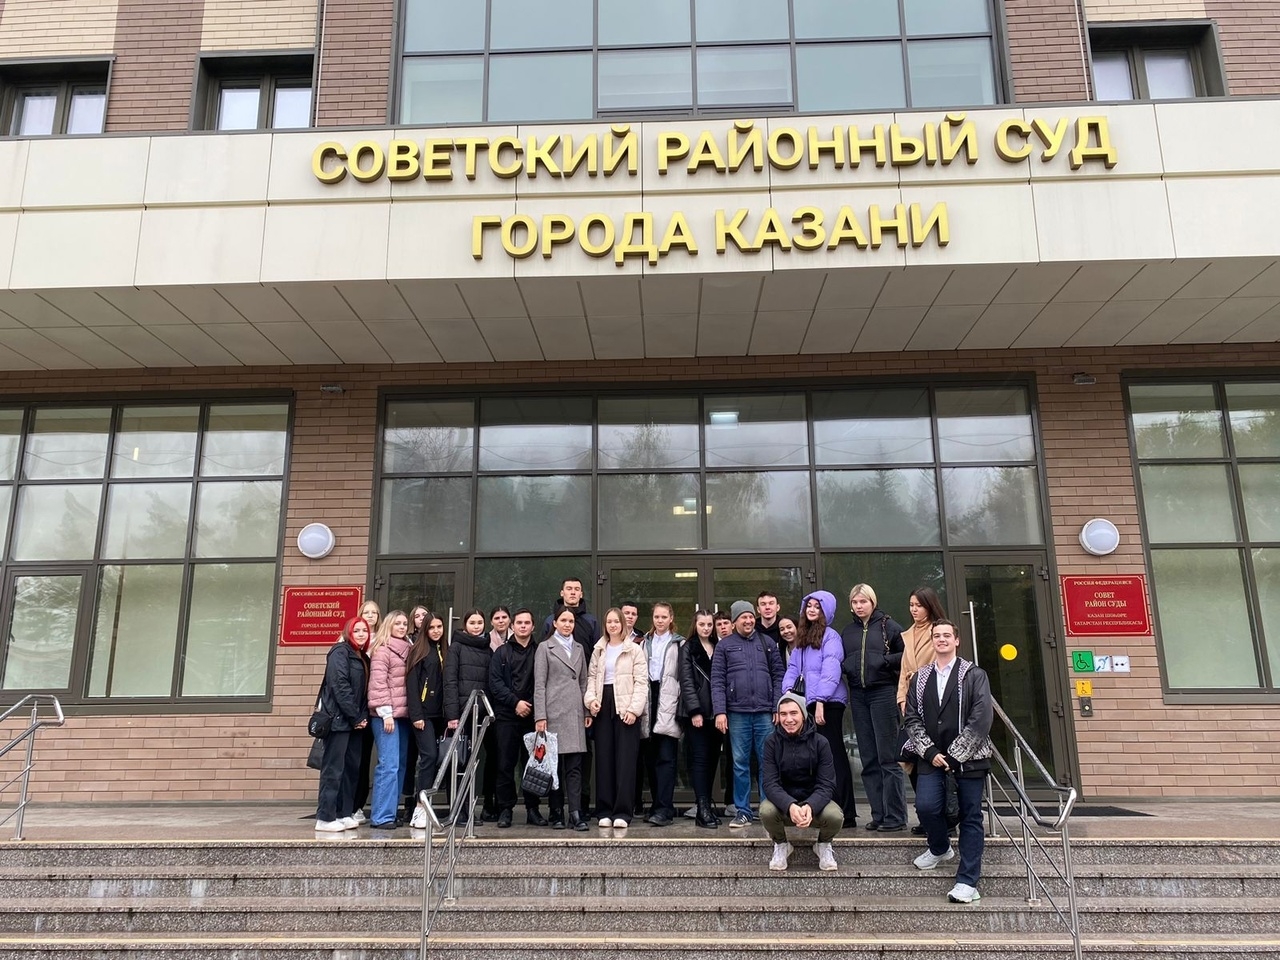 Сегодня студенты разных курсов по направлению "Государственное и муниципальное управление" посетили Советский районный суд города Казани.